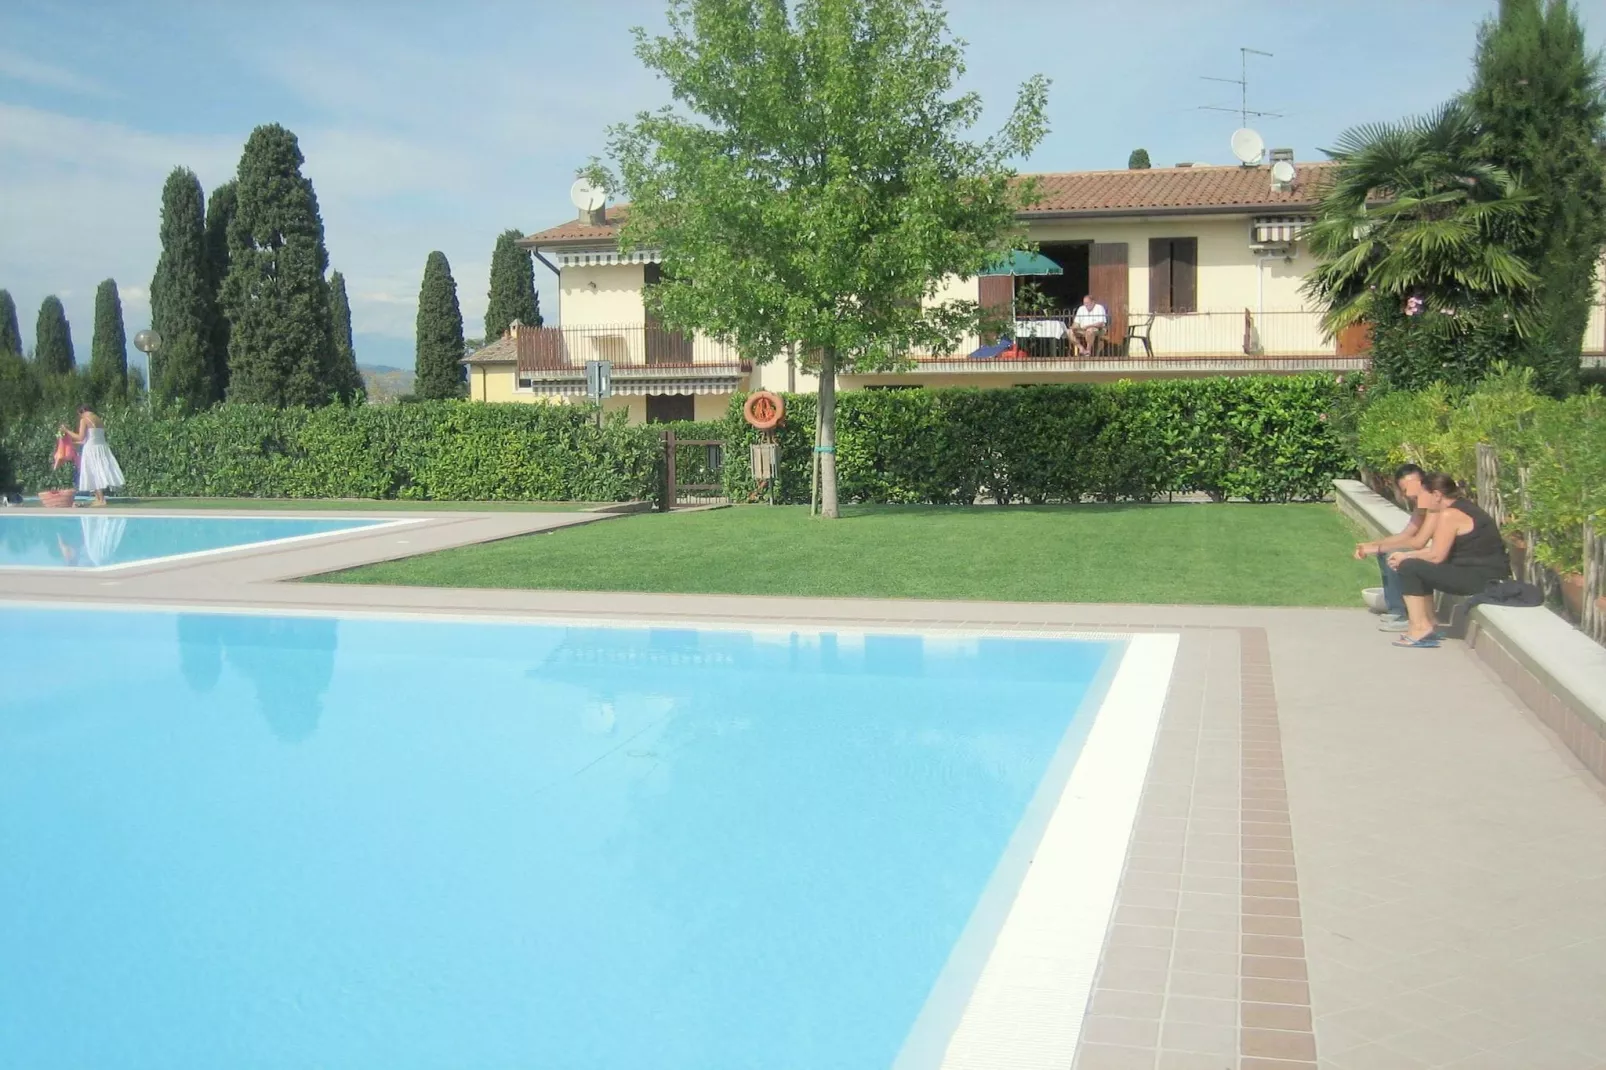 Mooie residentie met 2 zwembaden, ideaal voor gezinnen met kinderen-Terrasbalkon